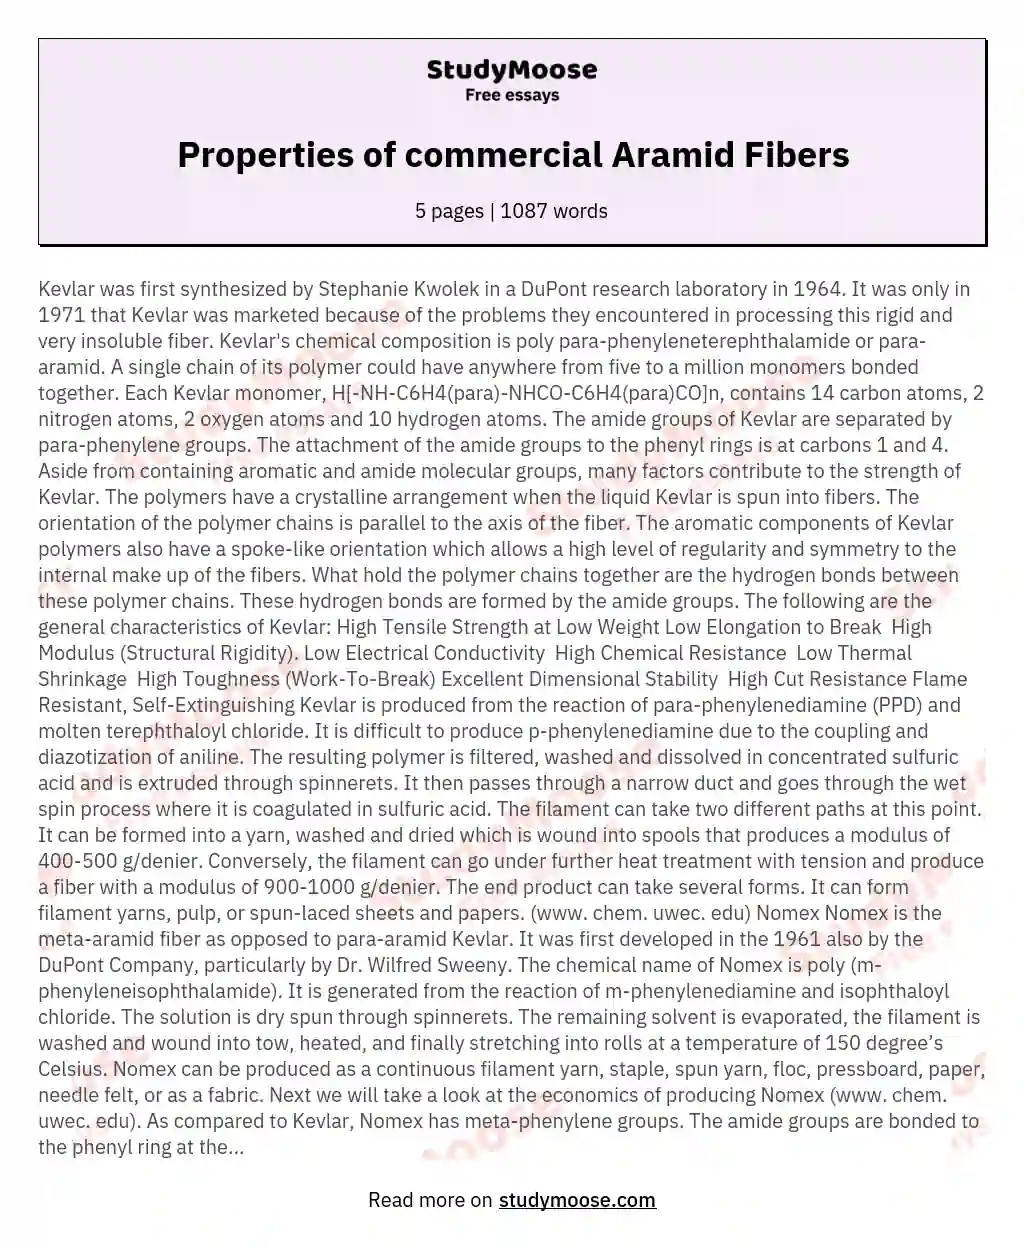 Properties of commercial Aramid Fibers essay